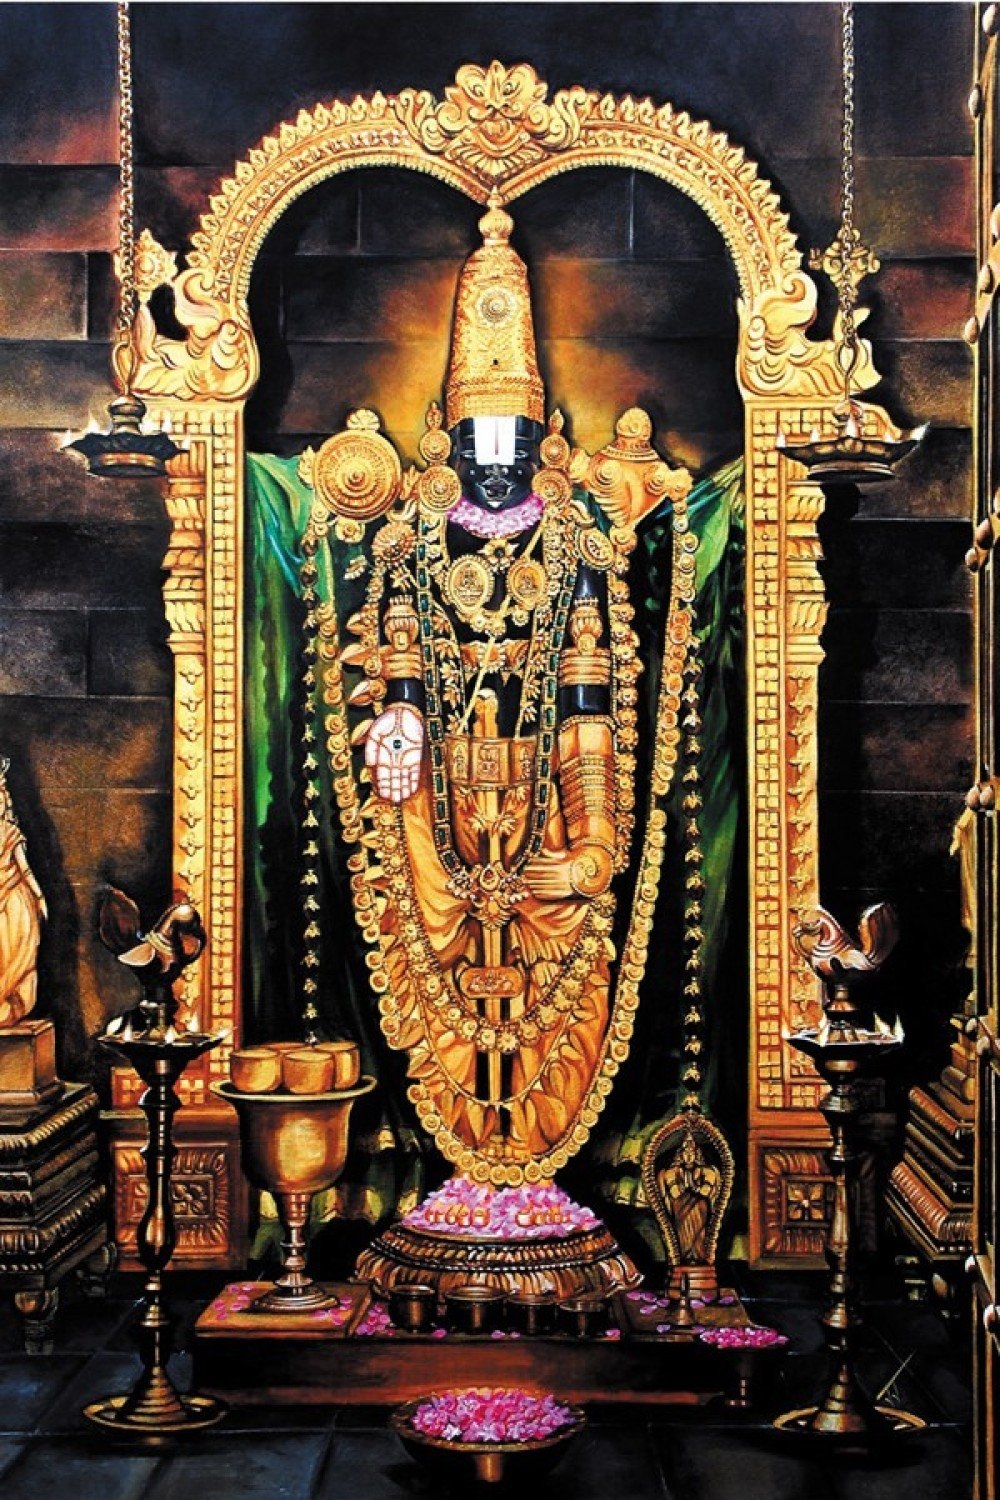 Tirupati Balaji | Lord Balaji